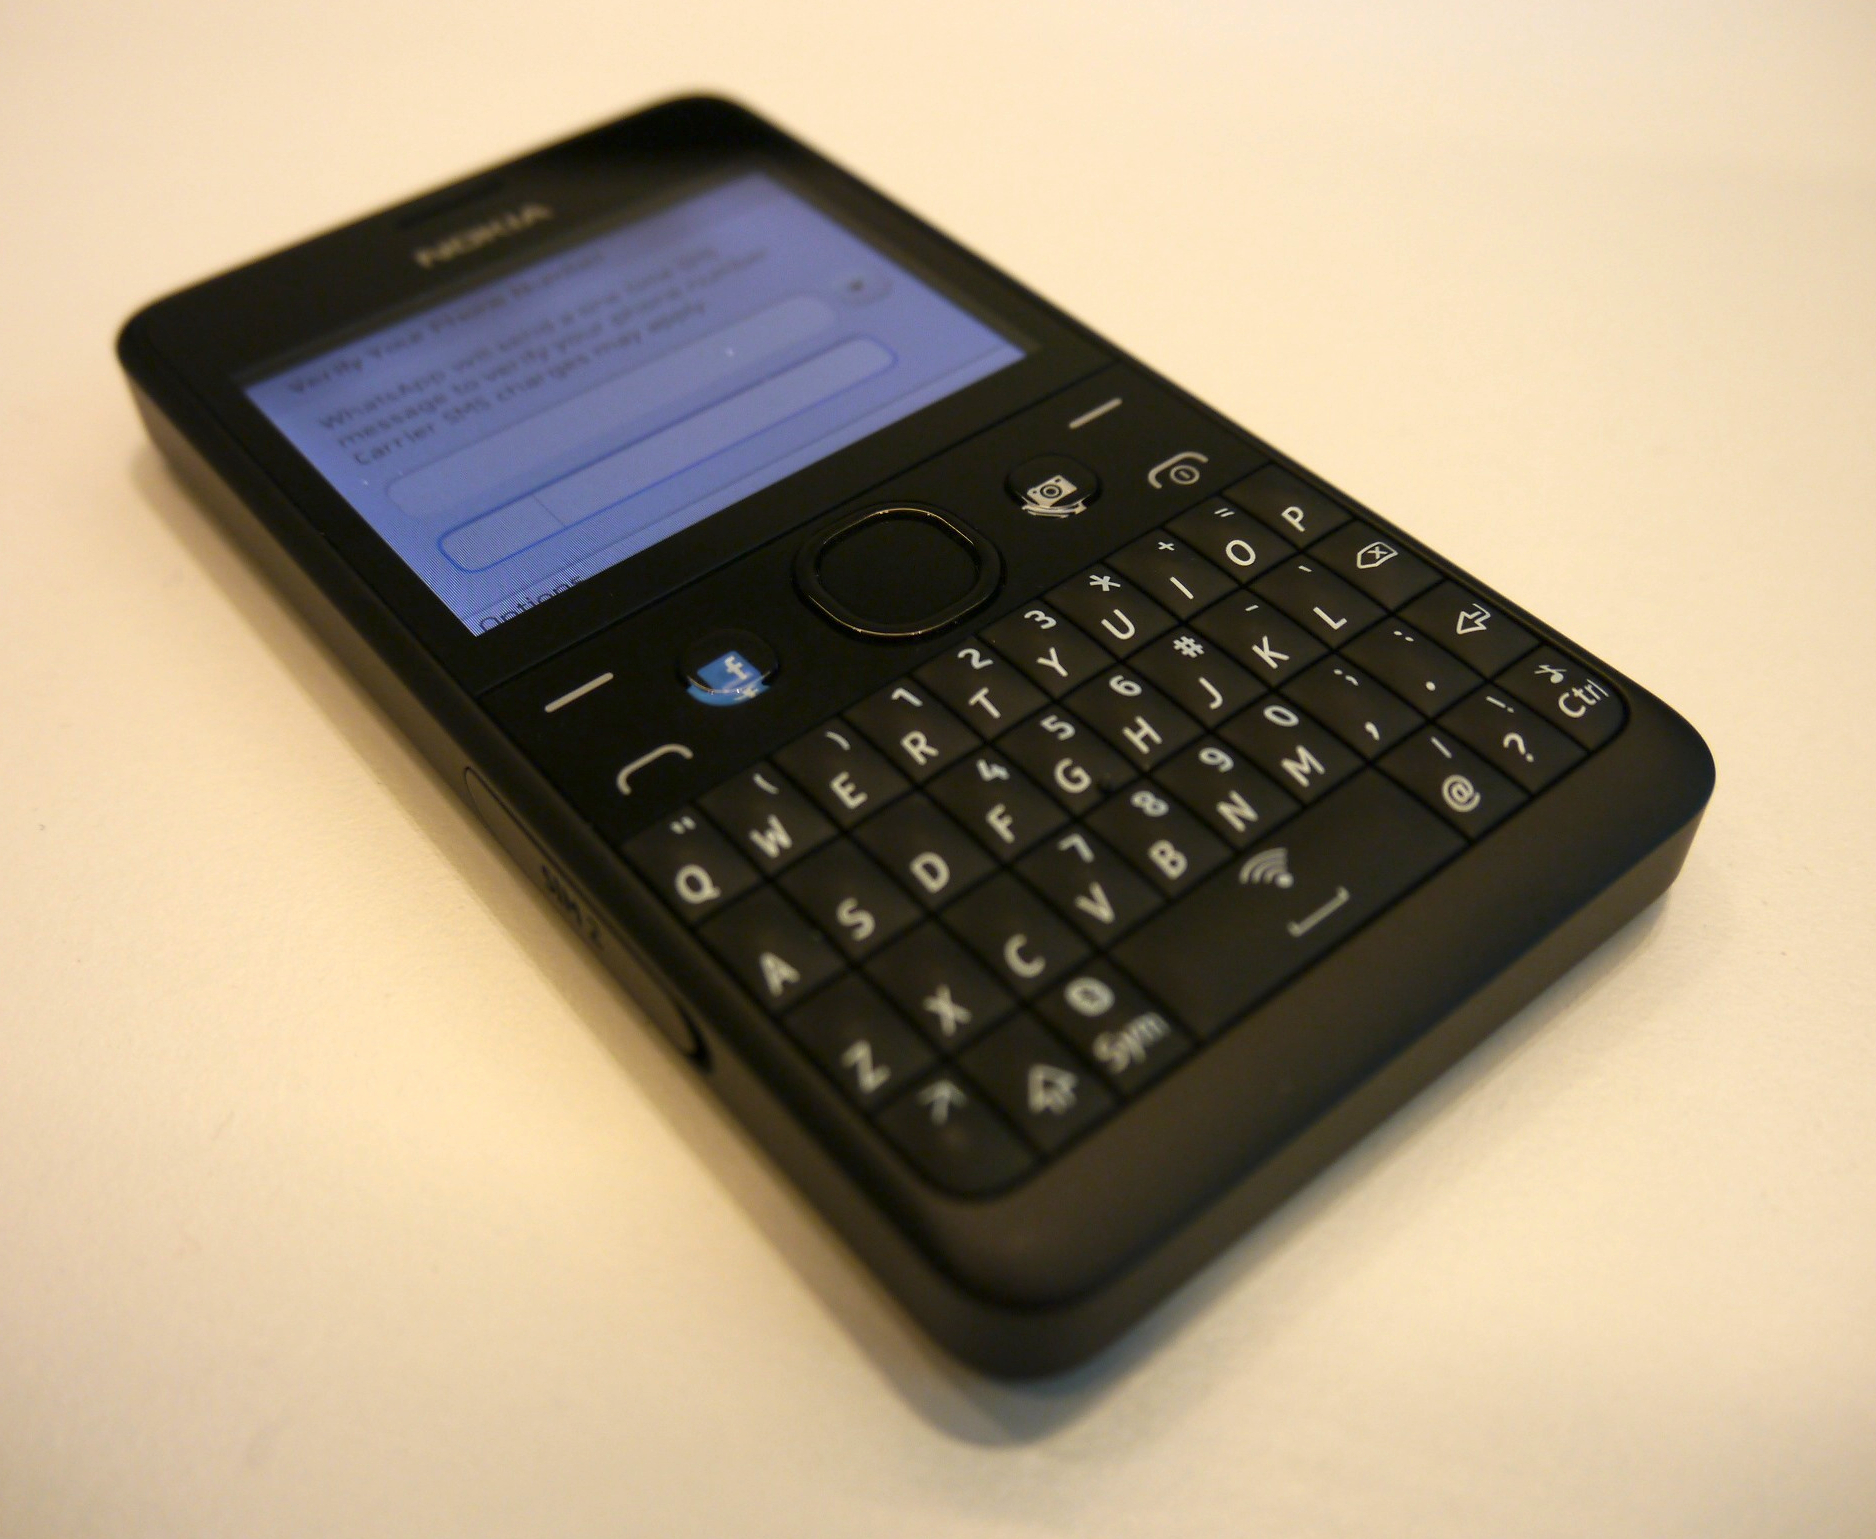 Facebook For Nokia E61i